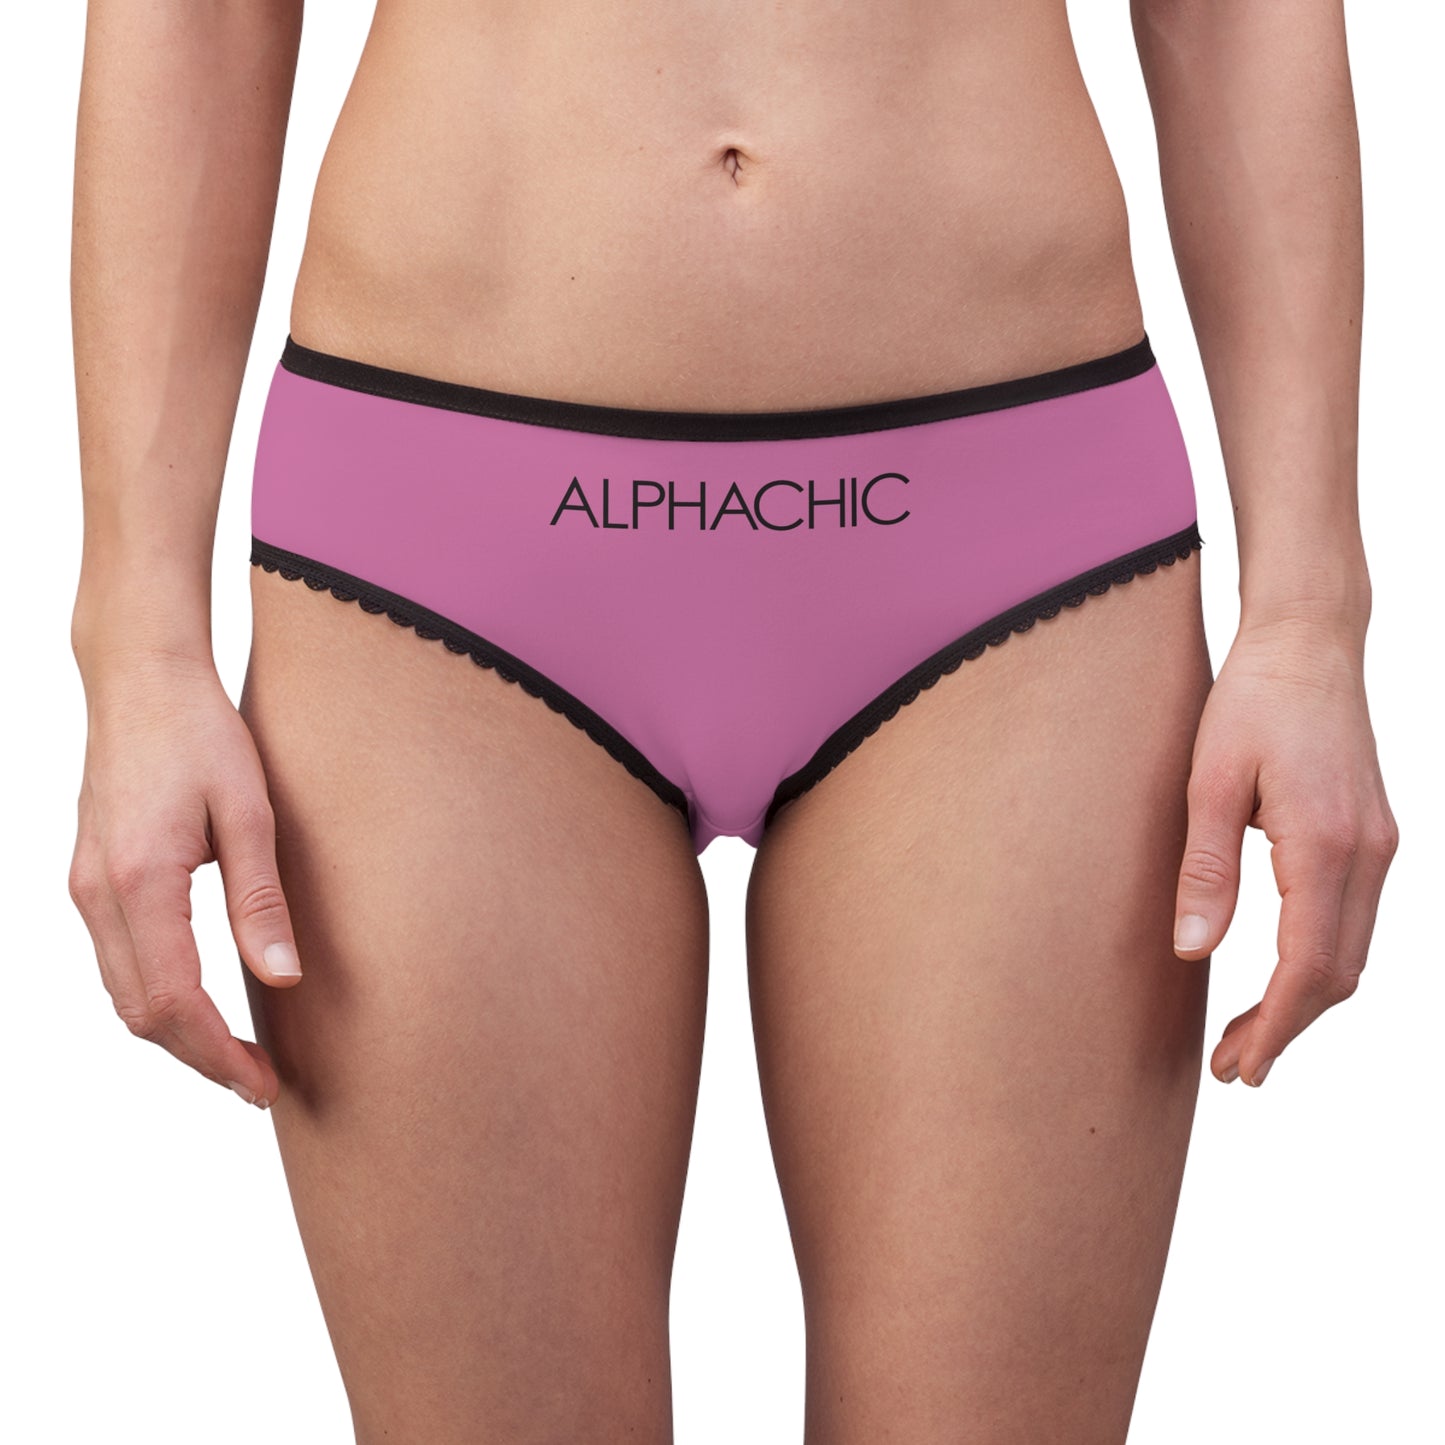 AlphaChic Briefs - Light Pink